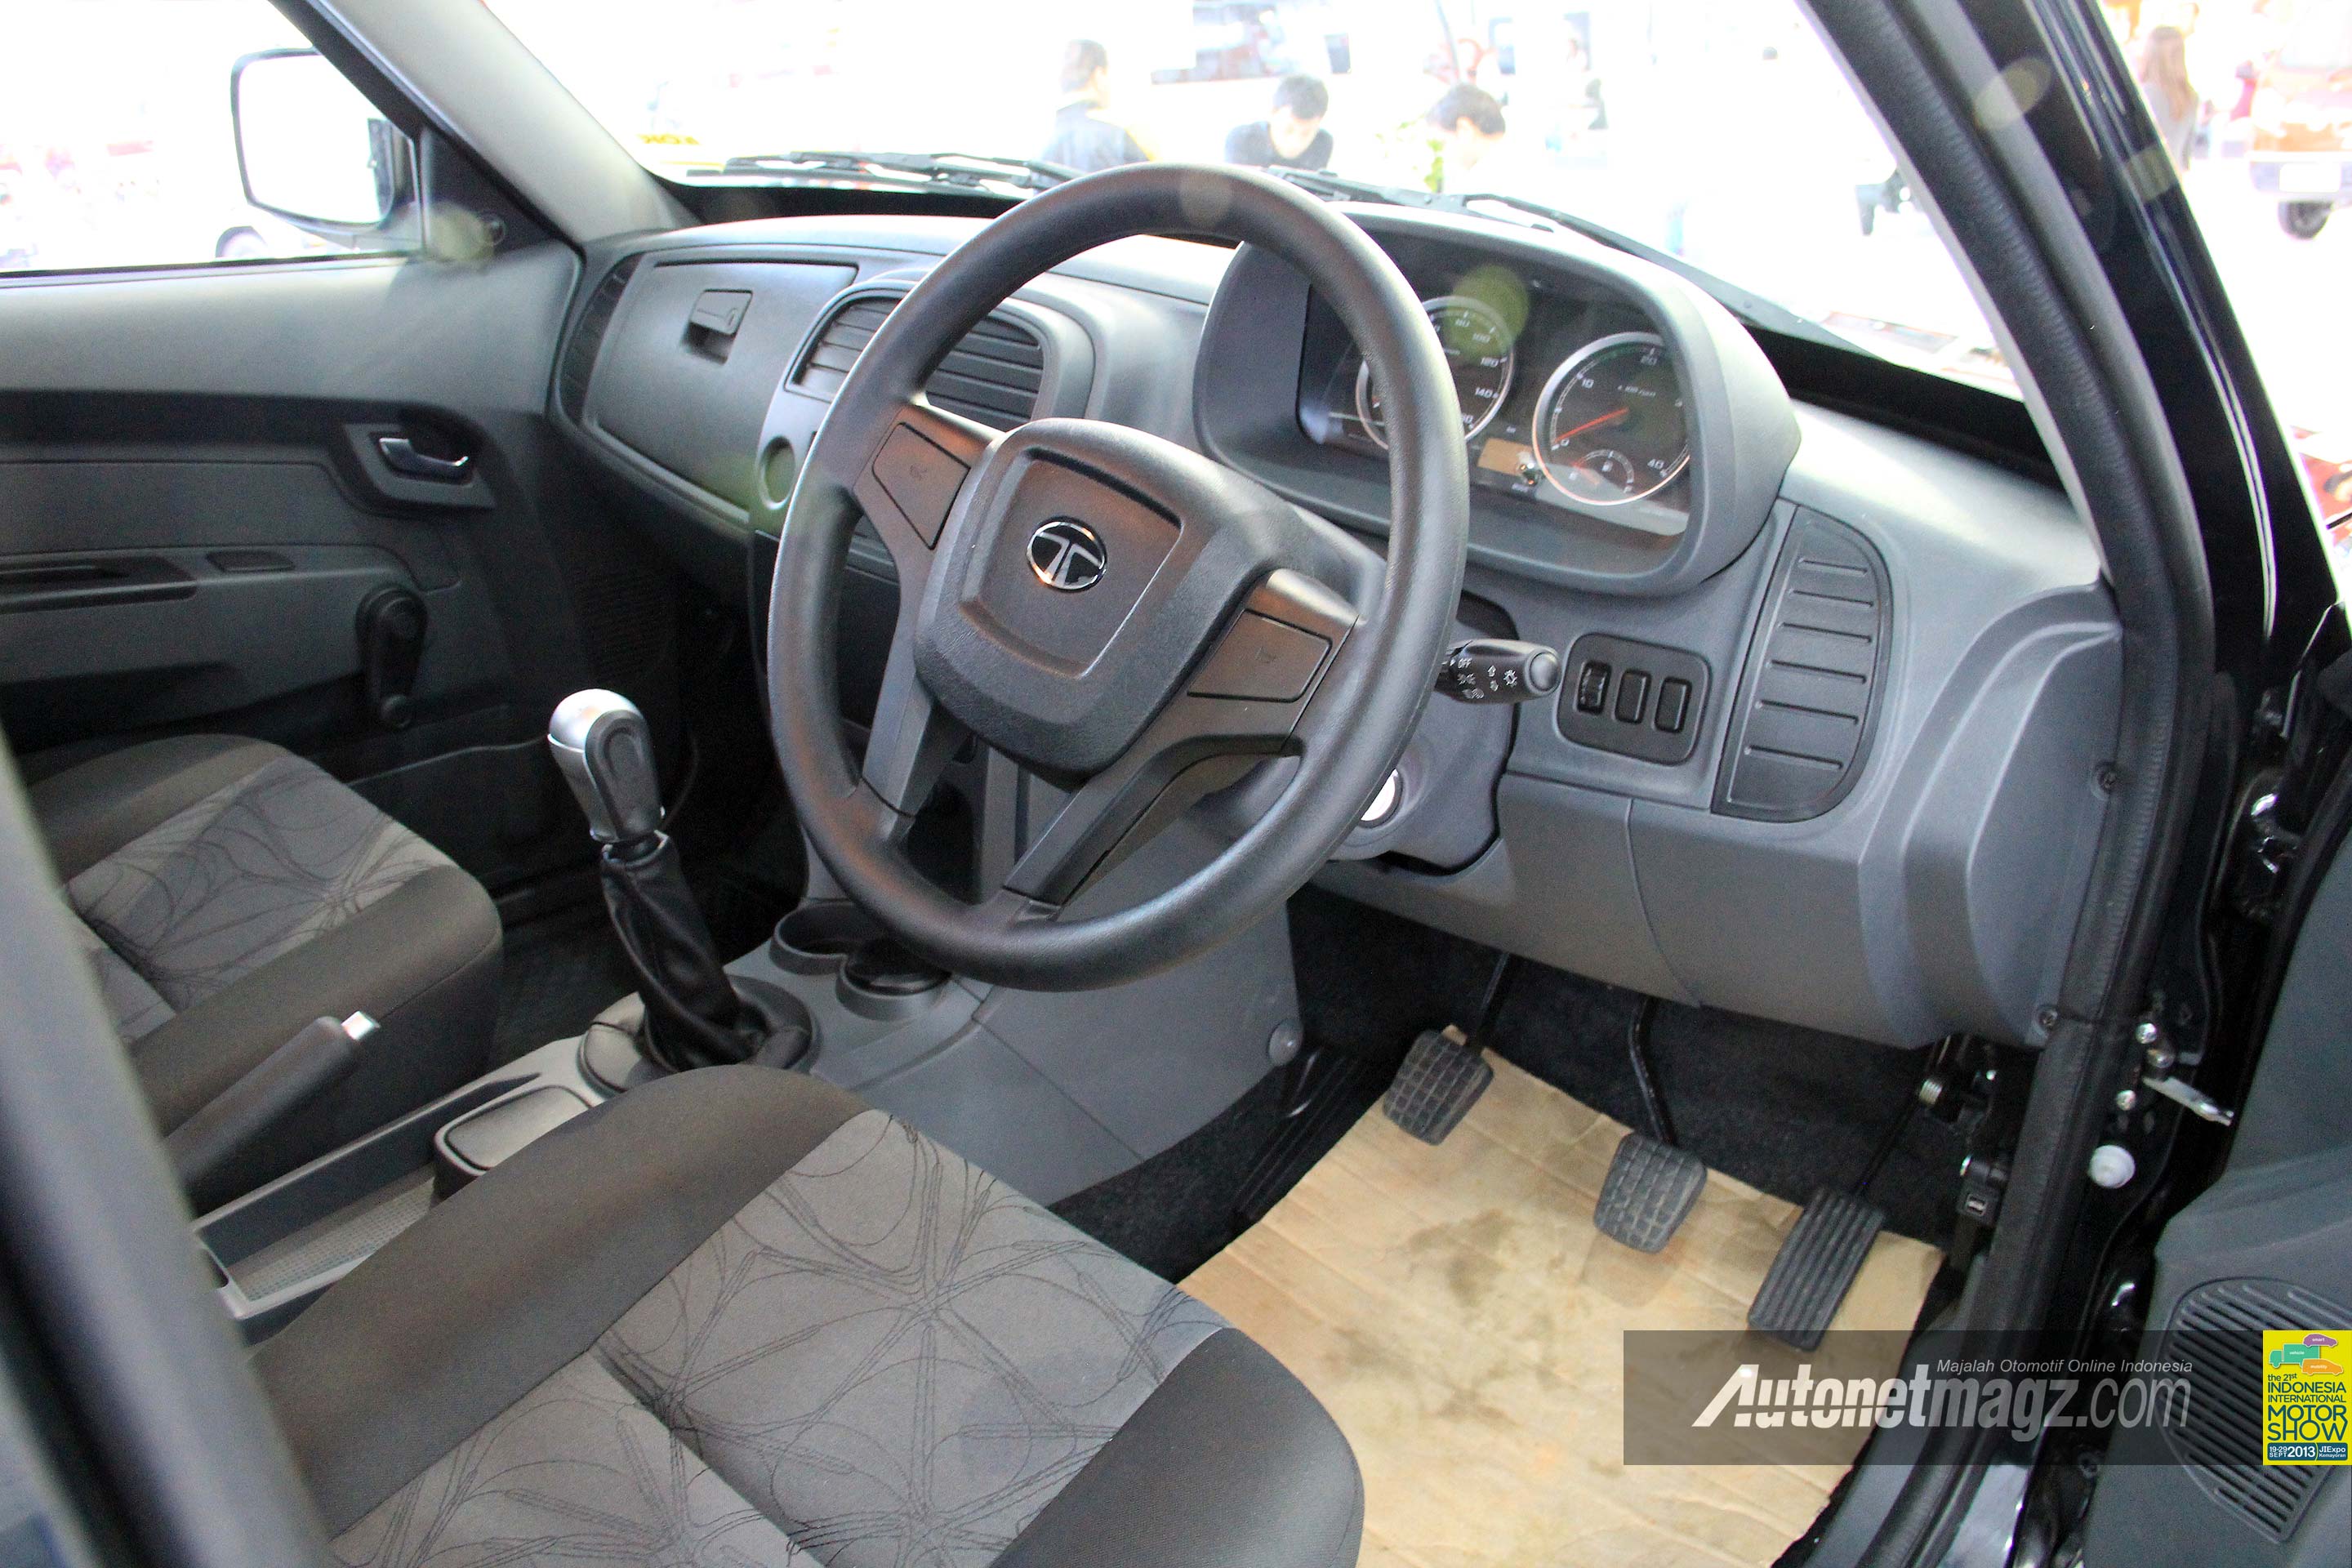 IIMS 2013, Interior TATA Xenon RX pick-up: Hampir Seluruh Mobil Tata Motor Yang Tampil di IIMS Bermesin Diesel